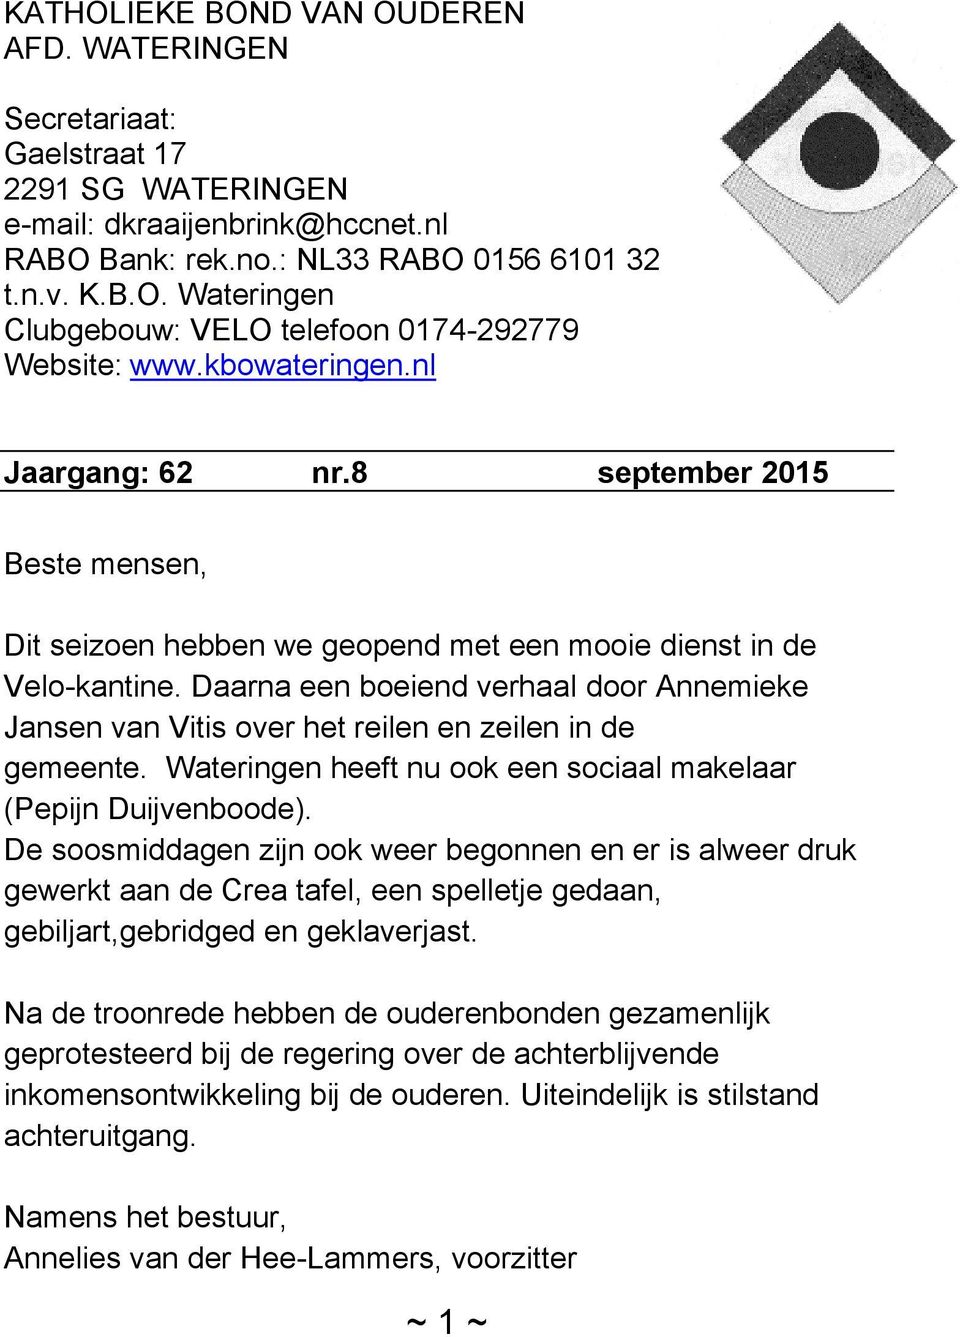 Daarna een boeiend verhaal door Annemieke Jansen van Vitis over het reilen en zeilen in de gemeente. Wateringen heeft nu ook een sociaal makelaar (Pepijn Duijvenboode).